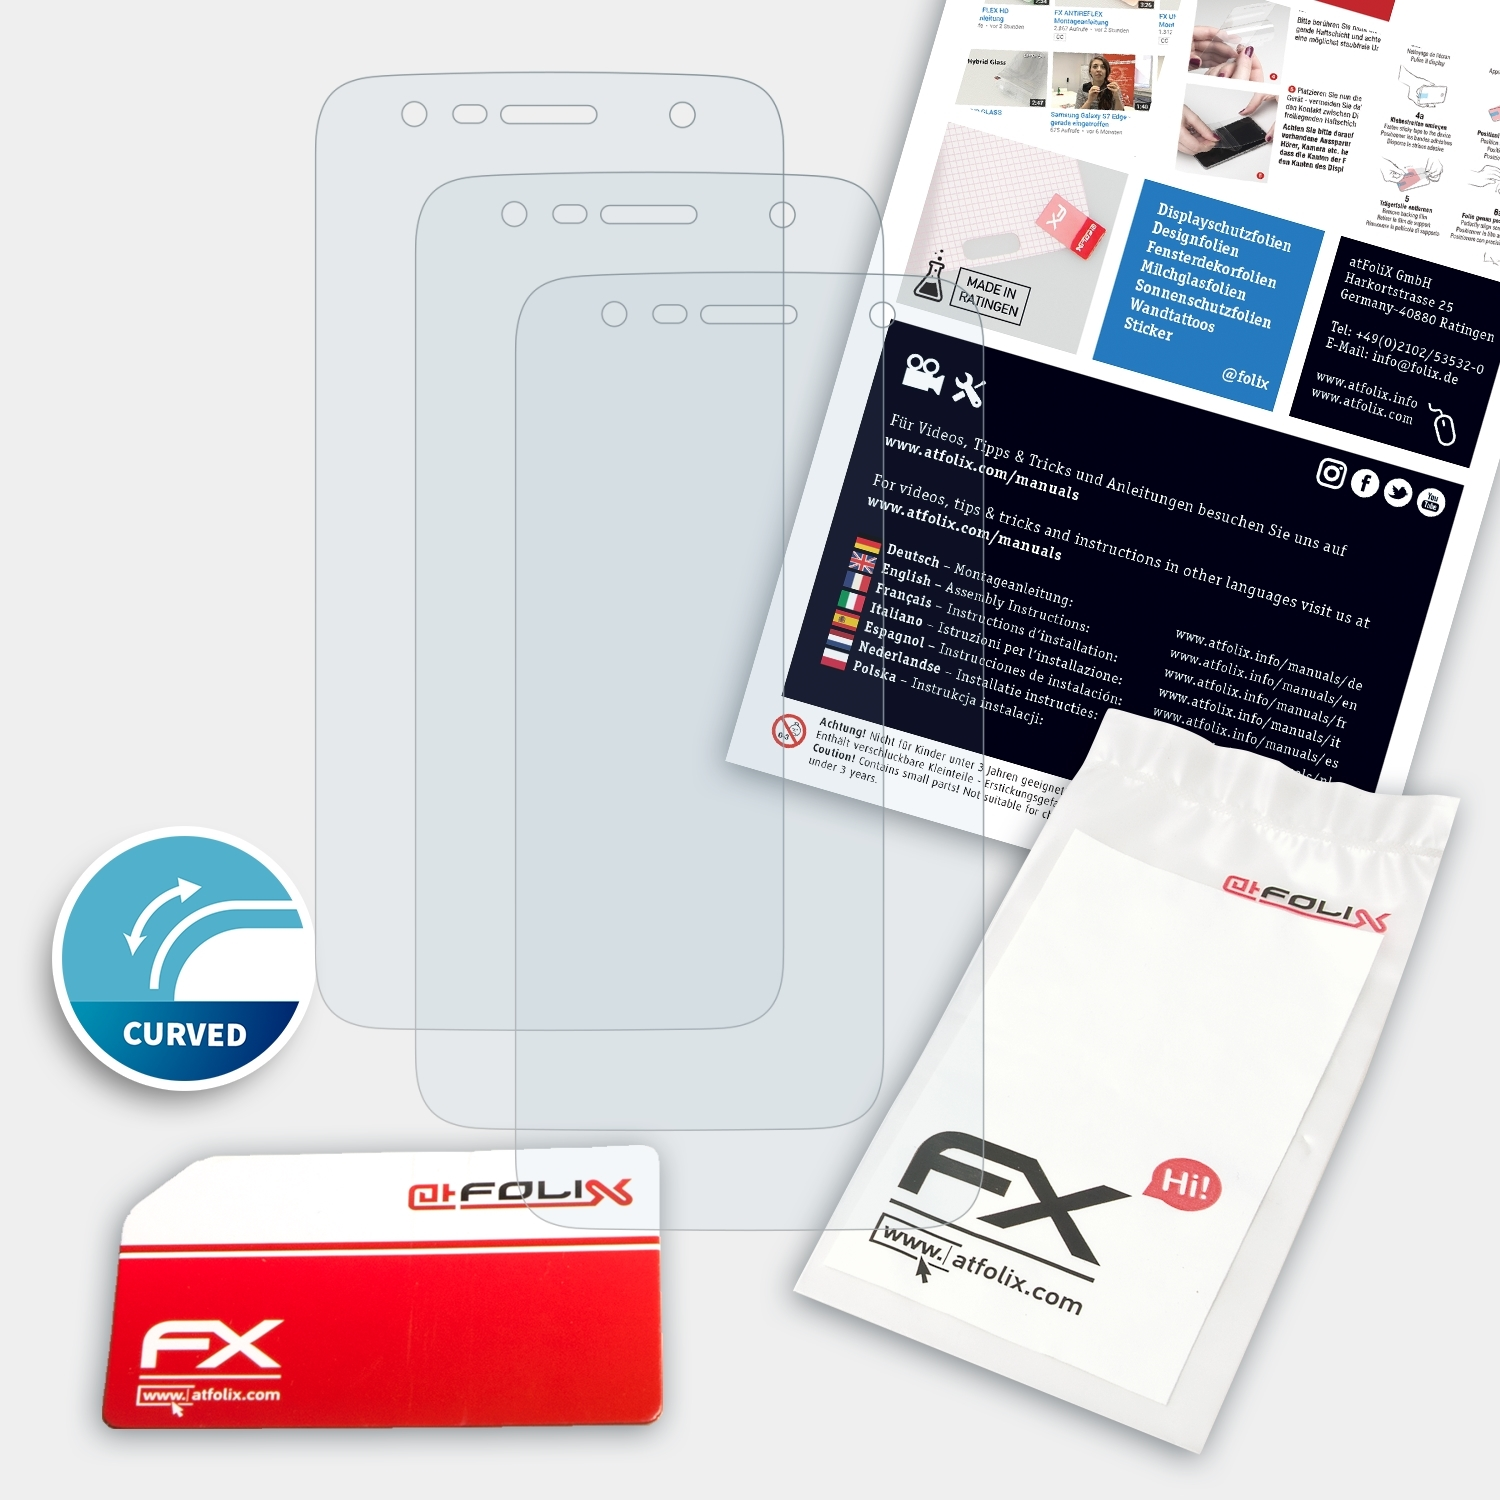 ATFOLIX 3x FX-ActiFleX Displayschutz(für LG 3) X Power